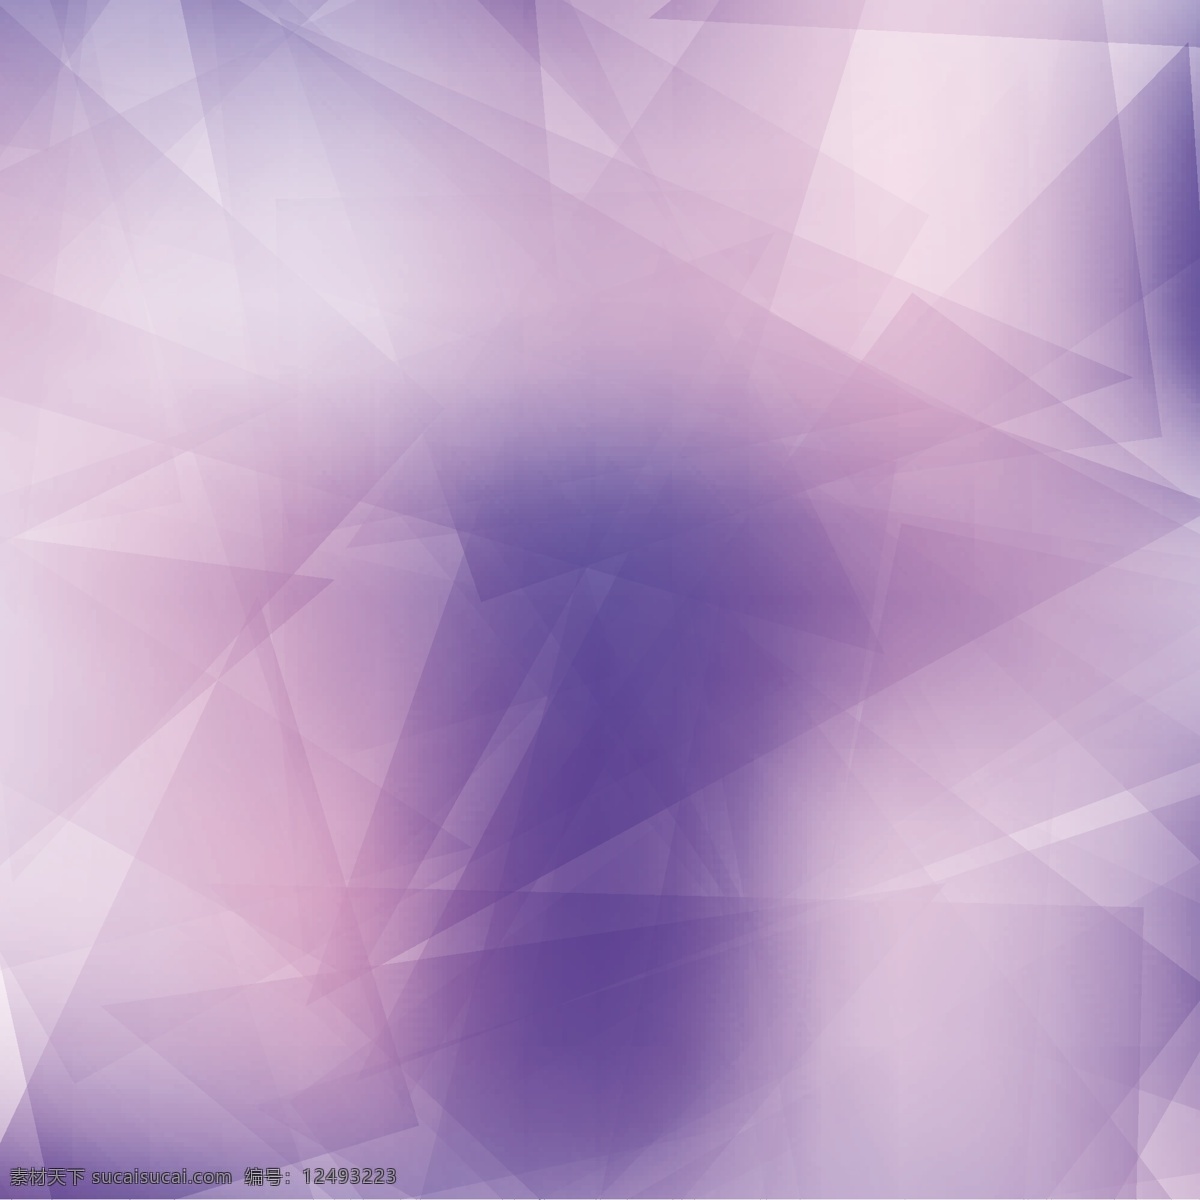 紫水晶 几何 背景 小册子 模式 抽象背景 商务 传单 抽象 名片 复古 模板 杂志 互联网 艺术 平面 版面 平面设计 现代 文档